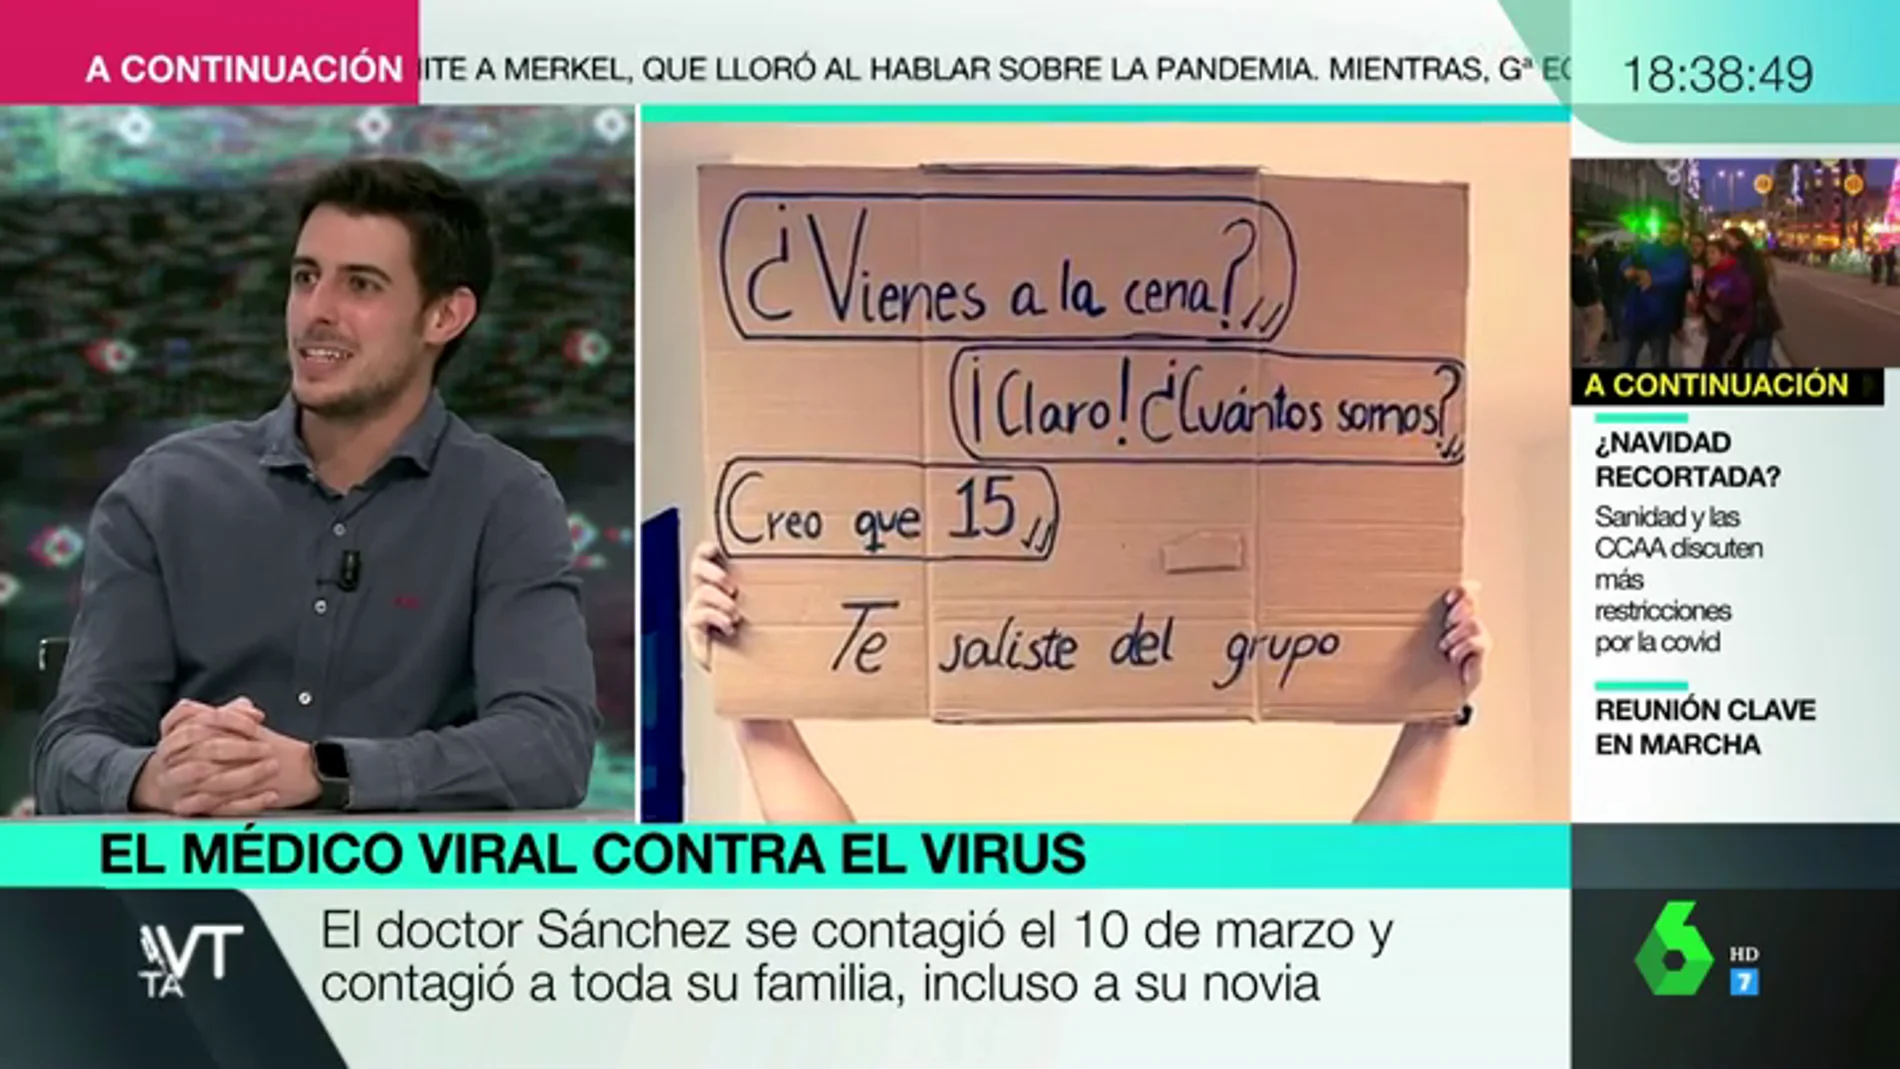 El mensaje del doctor Sánchez, viral por sus carteles contra el COVID: "Nos hemos esforzado mucho para llegar a esta Navidad, y aún no estamos para hacer esto"